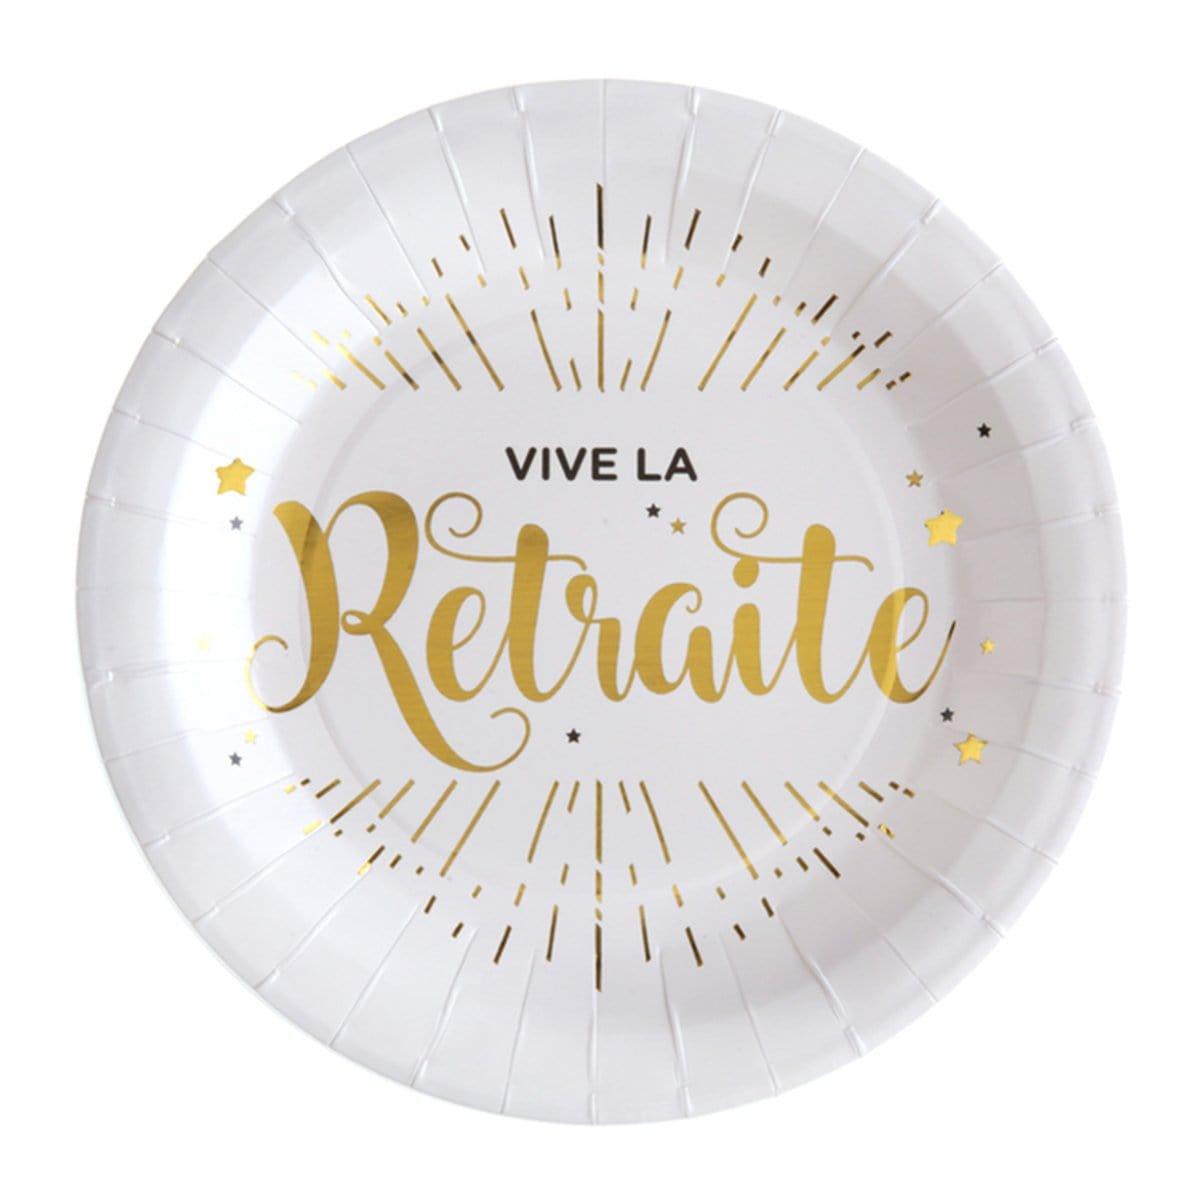 Buy Retirement Vive La Retraite Paper Plates 9 Inches, 10 Count sold at Party Expert